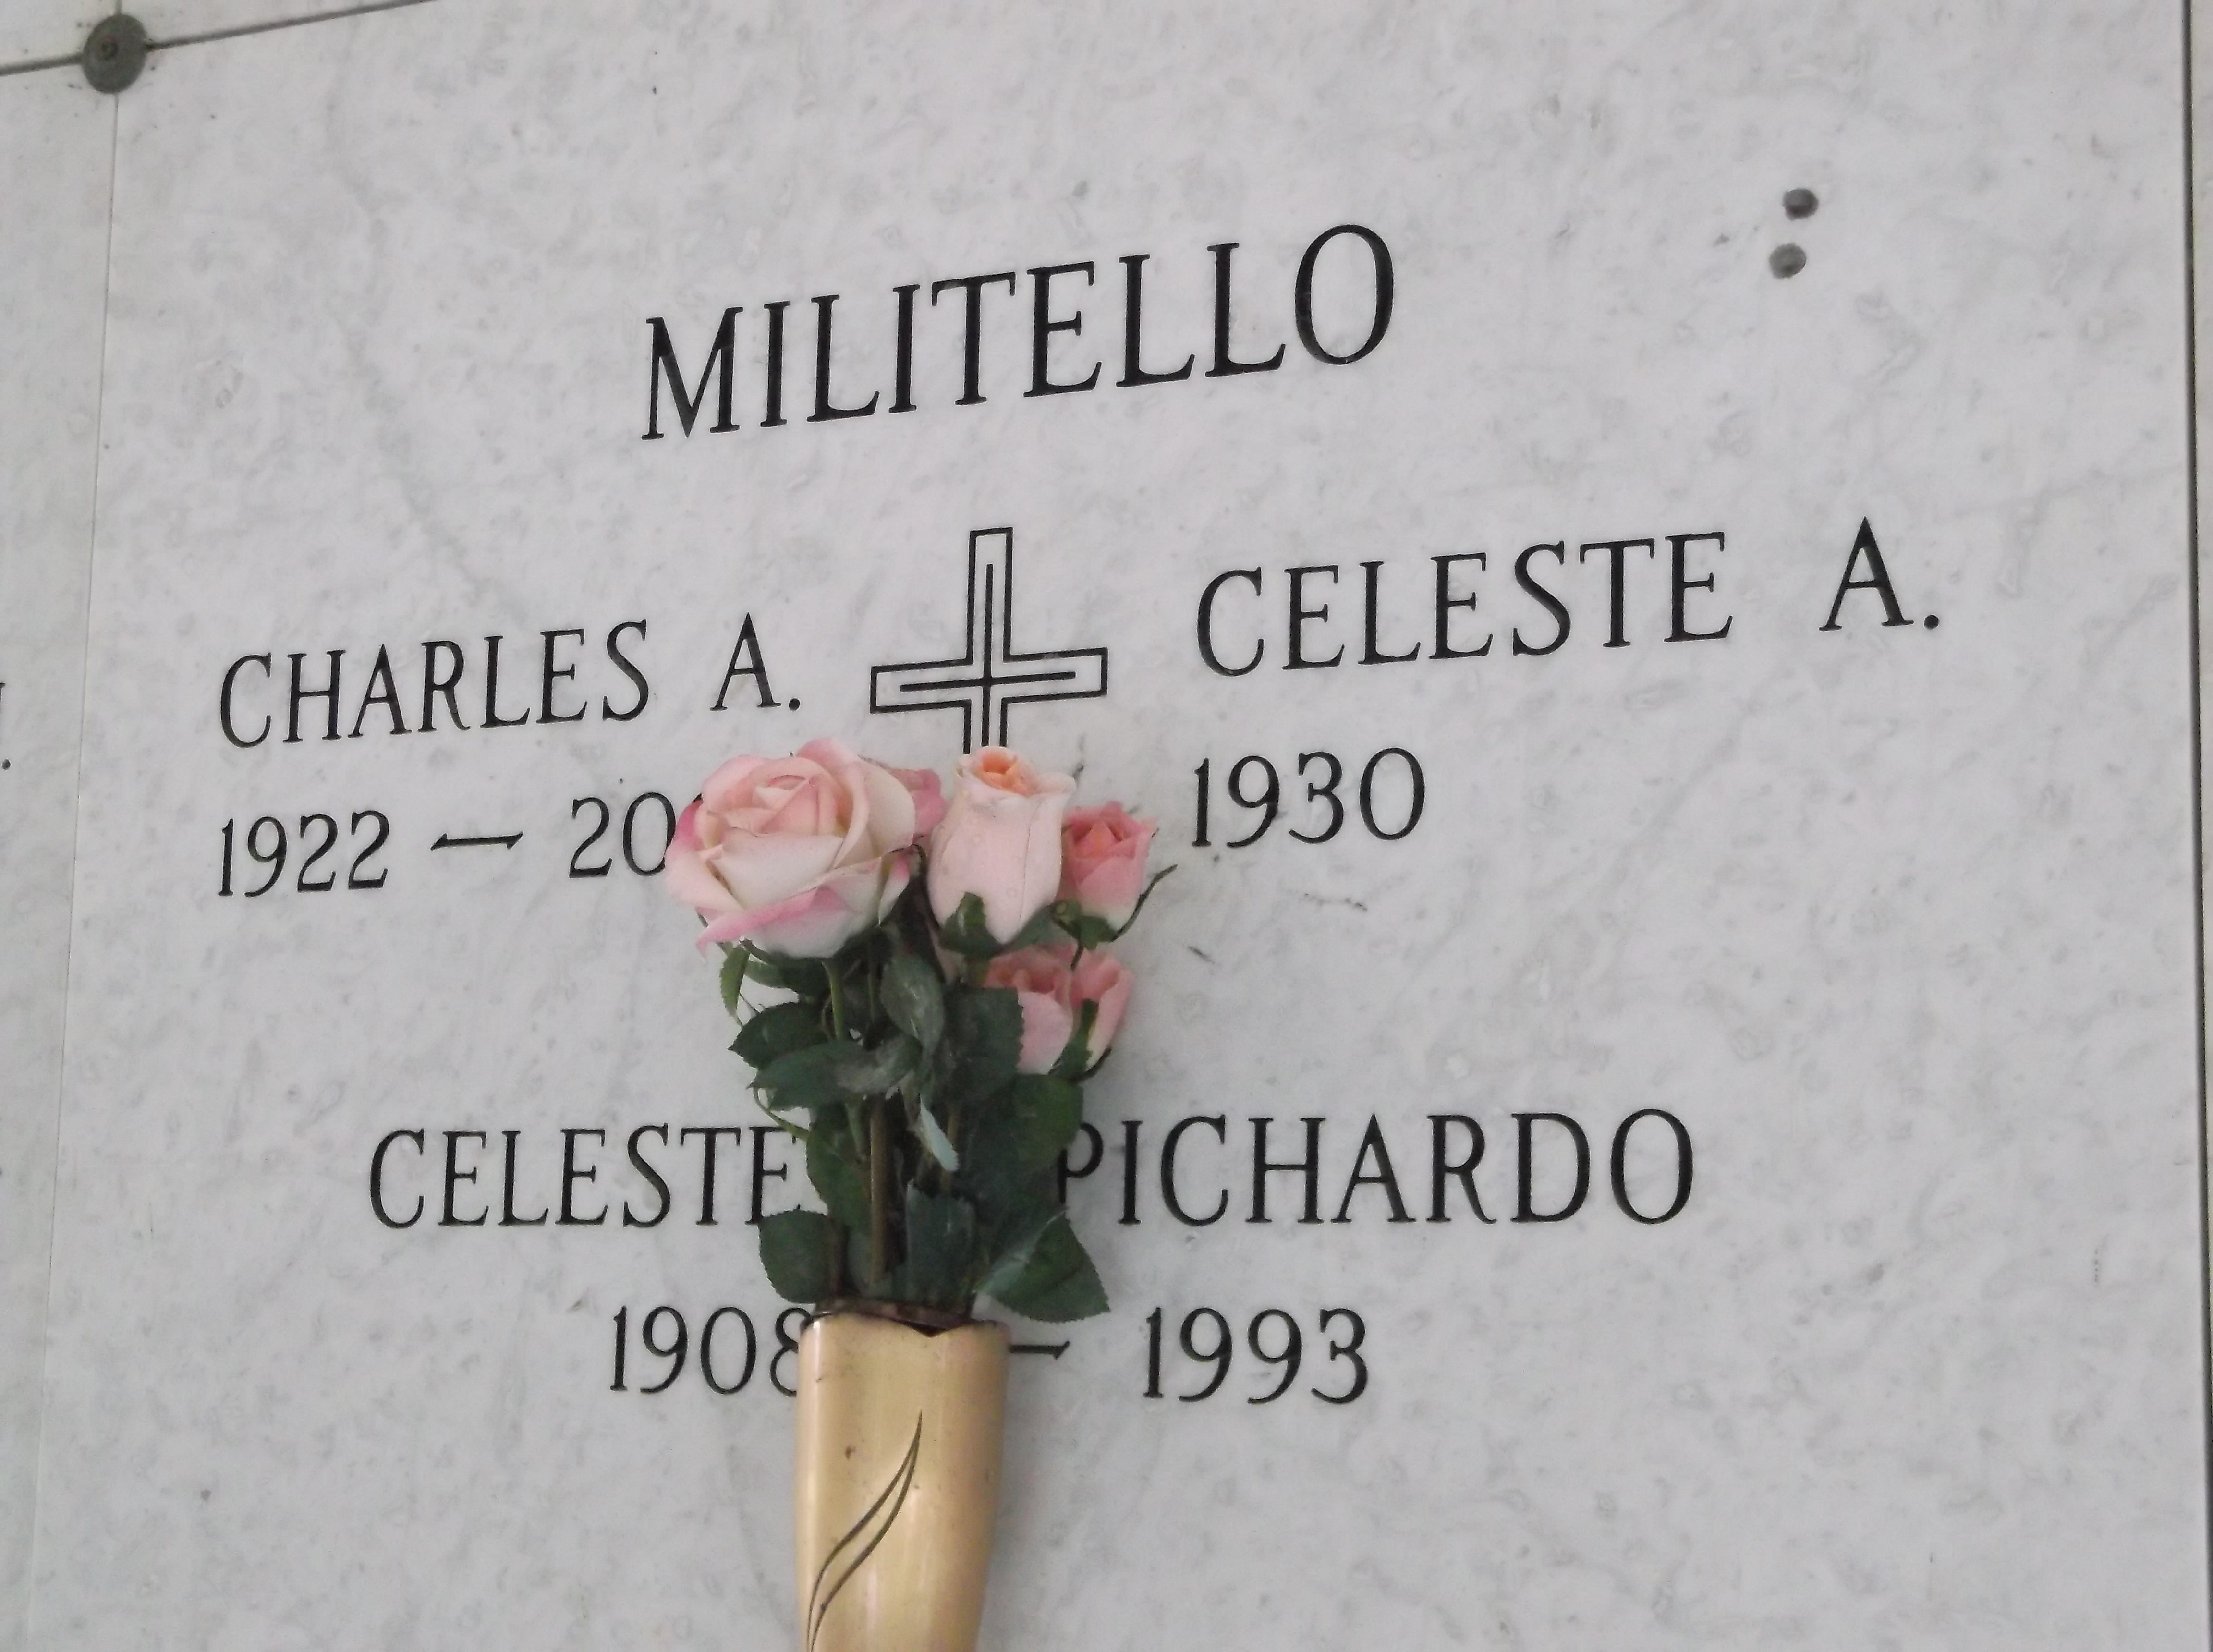 Charles A Militello